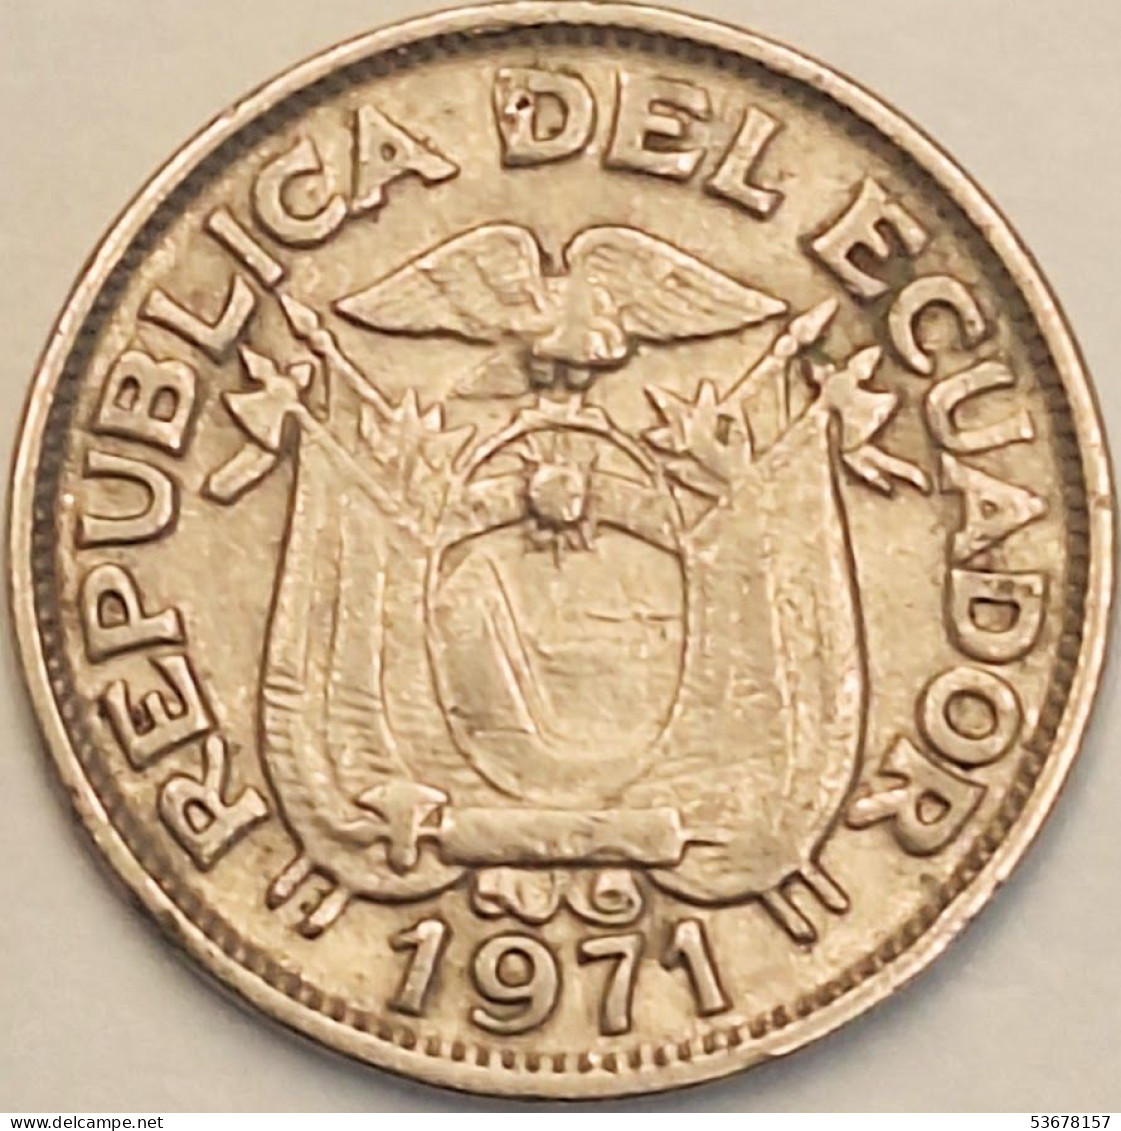 Ecuador - 20 Centavos 1971, KM# 77.1c (#3812) - Ecuador